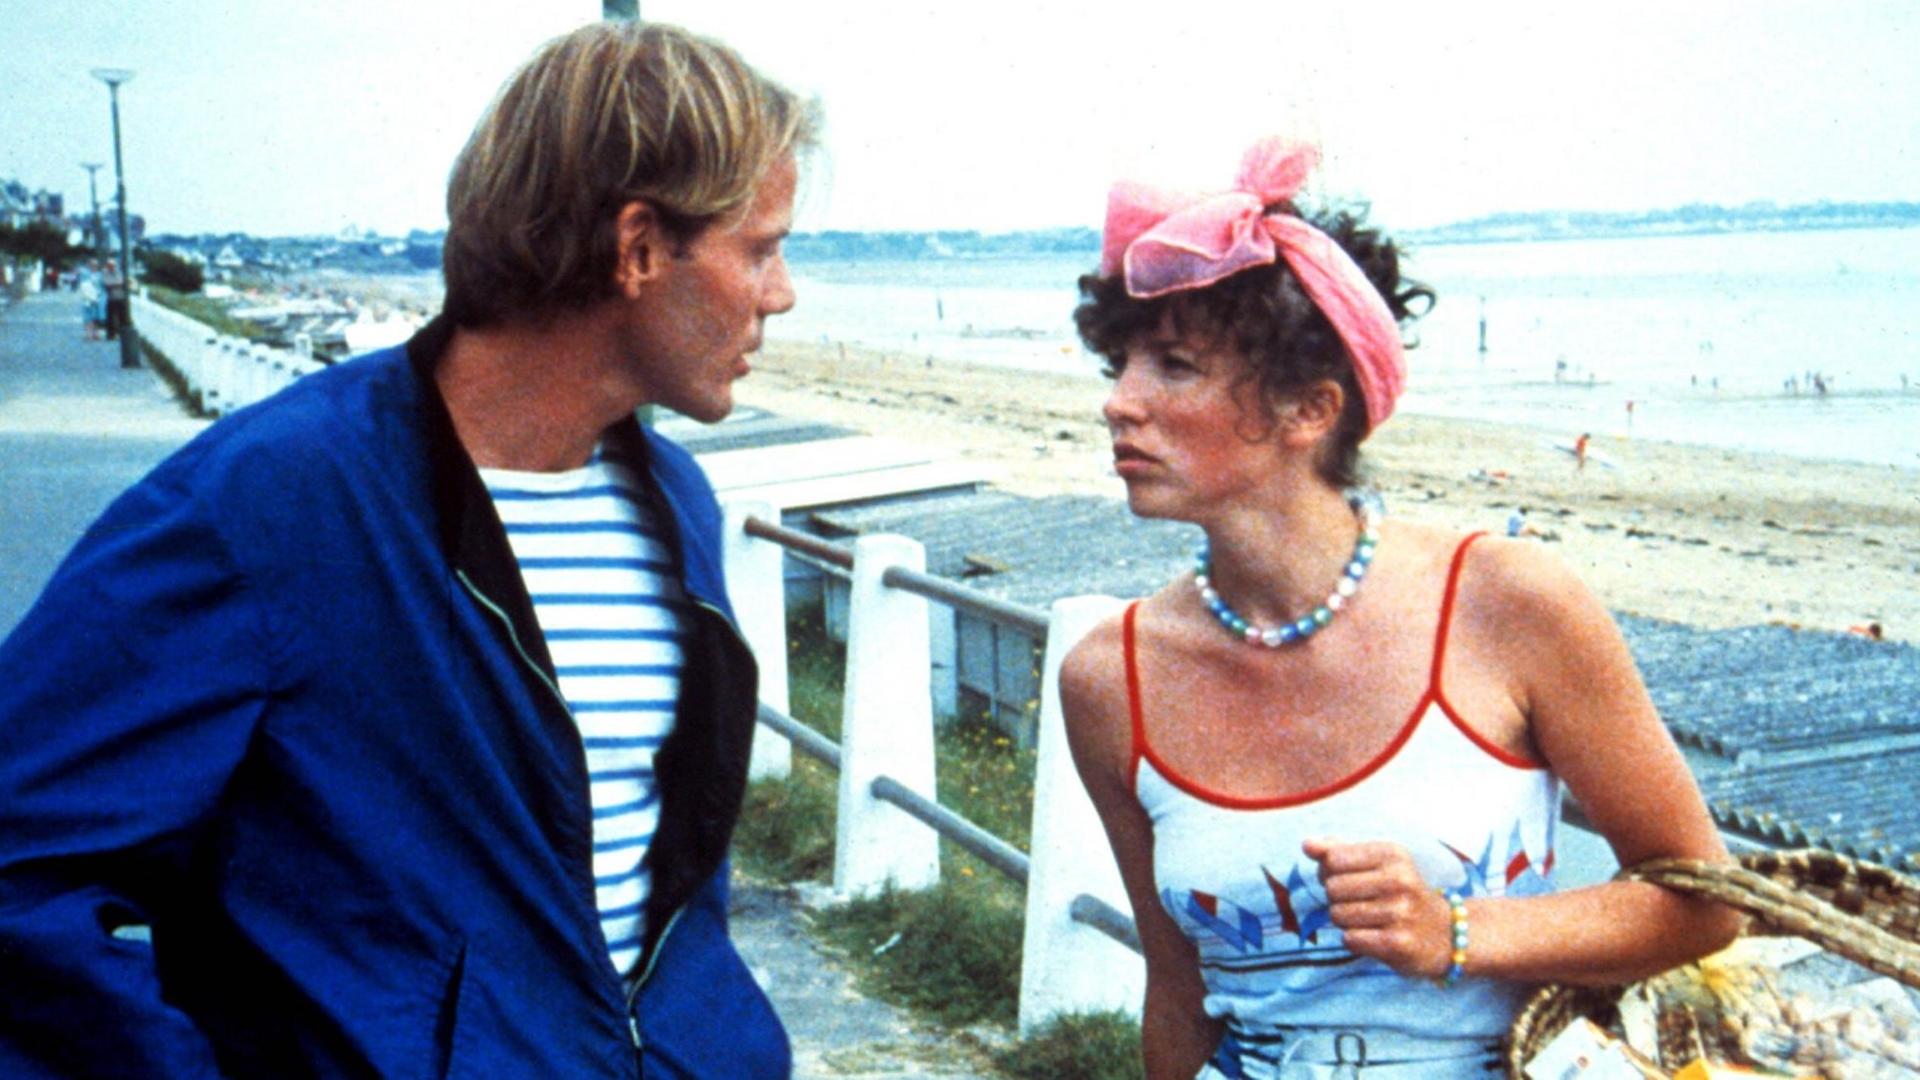 Ein Mann und eine Frau unterhalten sich auf einer Strandpromenade